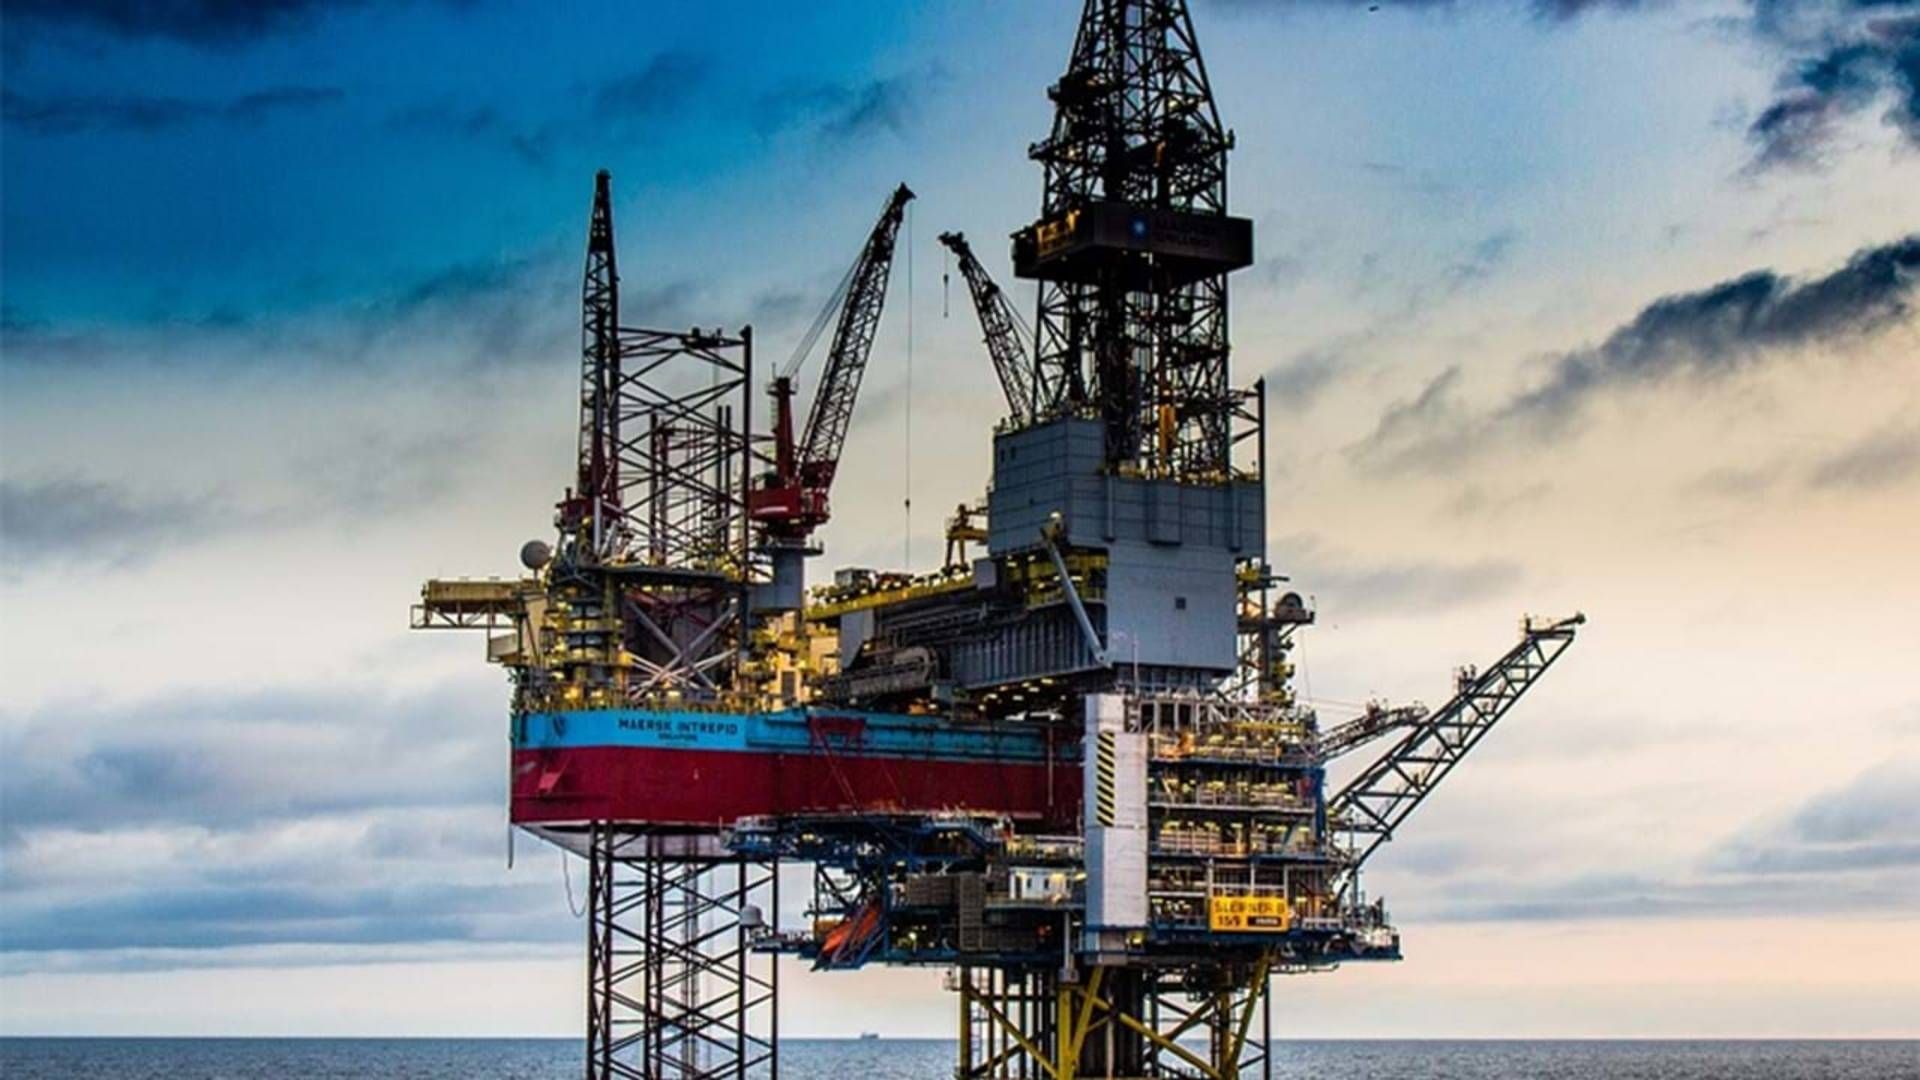 Maersk Drilling er et af de selskaber, Bankinvests bæredygtige fonde har investeret i. Her ses platformen Maersk Intrepid. | Foto: Maersk Drilling